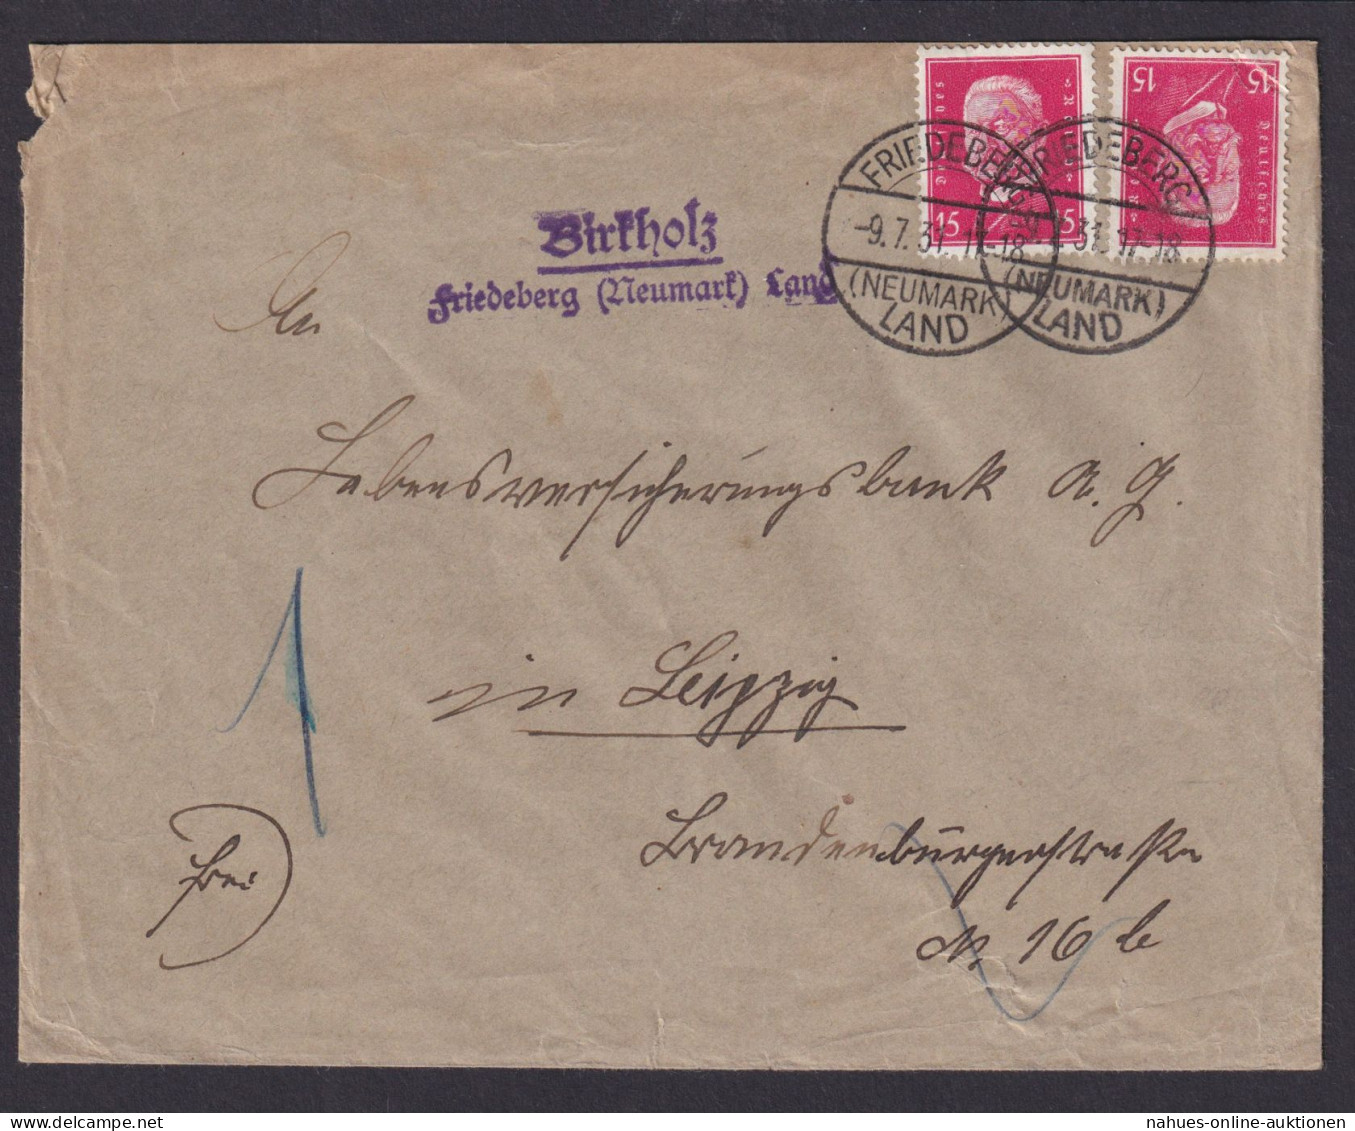 Birkholz über Friedeberg Neumark Brandenburg Deutsches Reich Brief - Covers & Documents